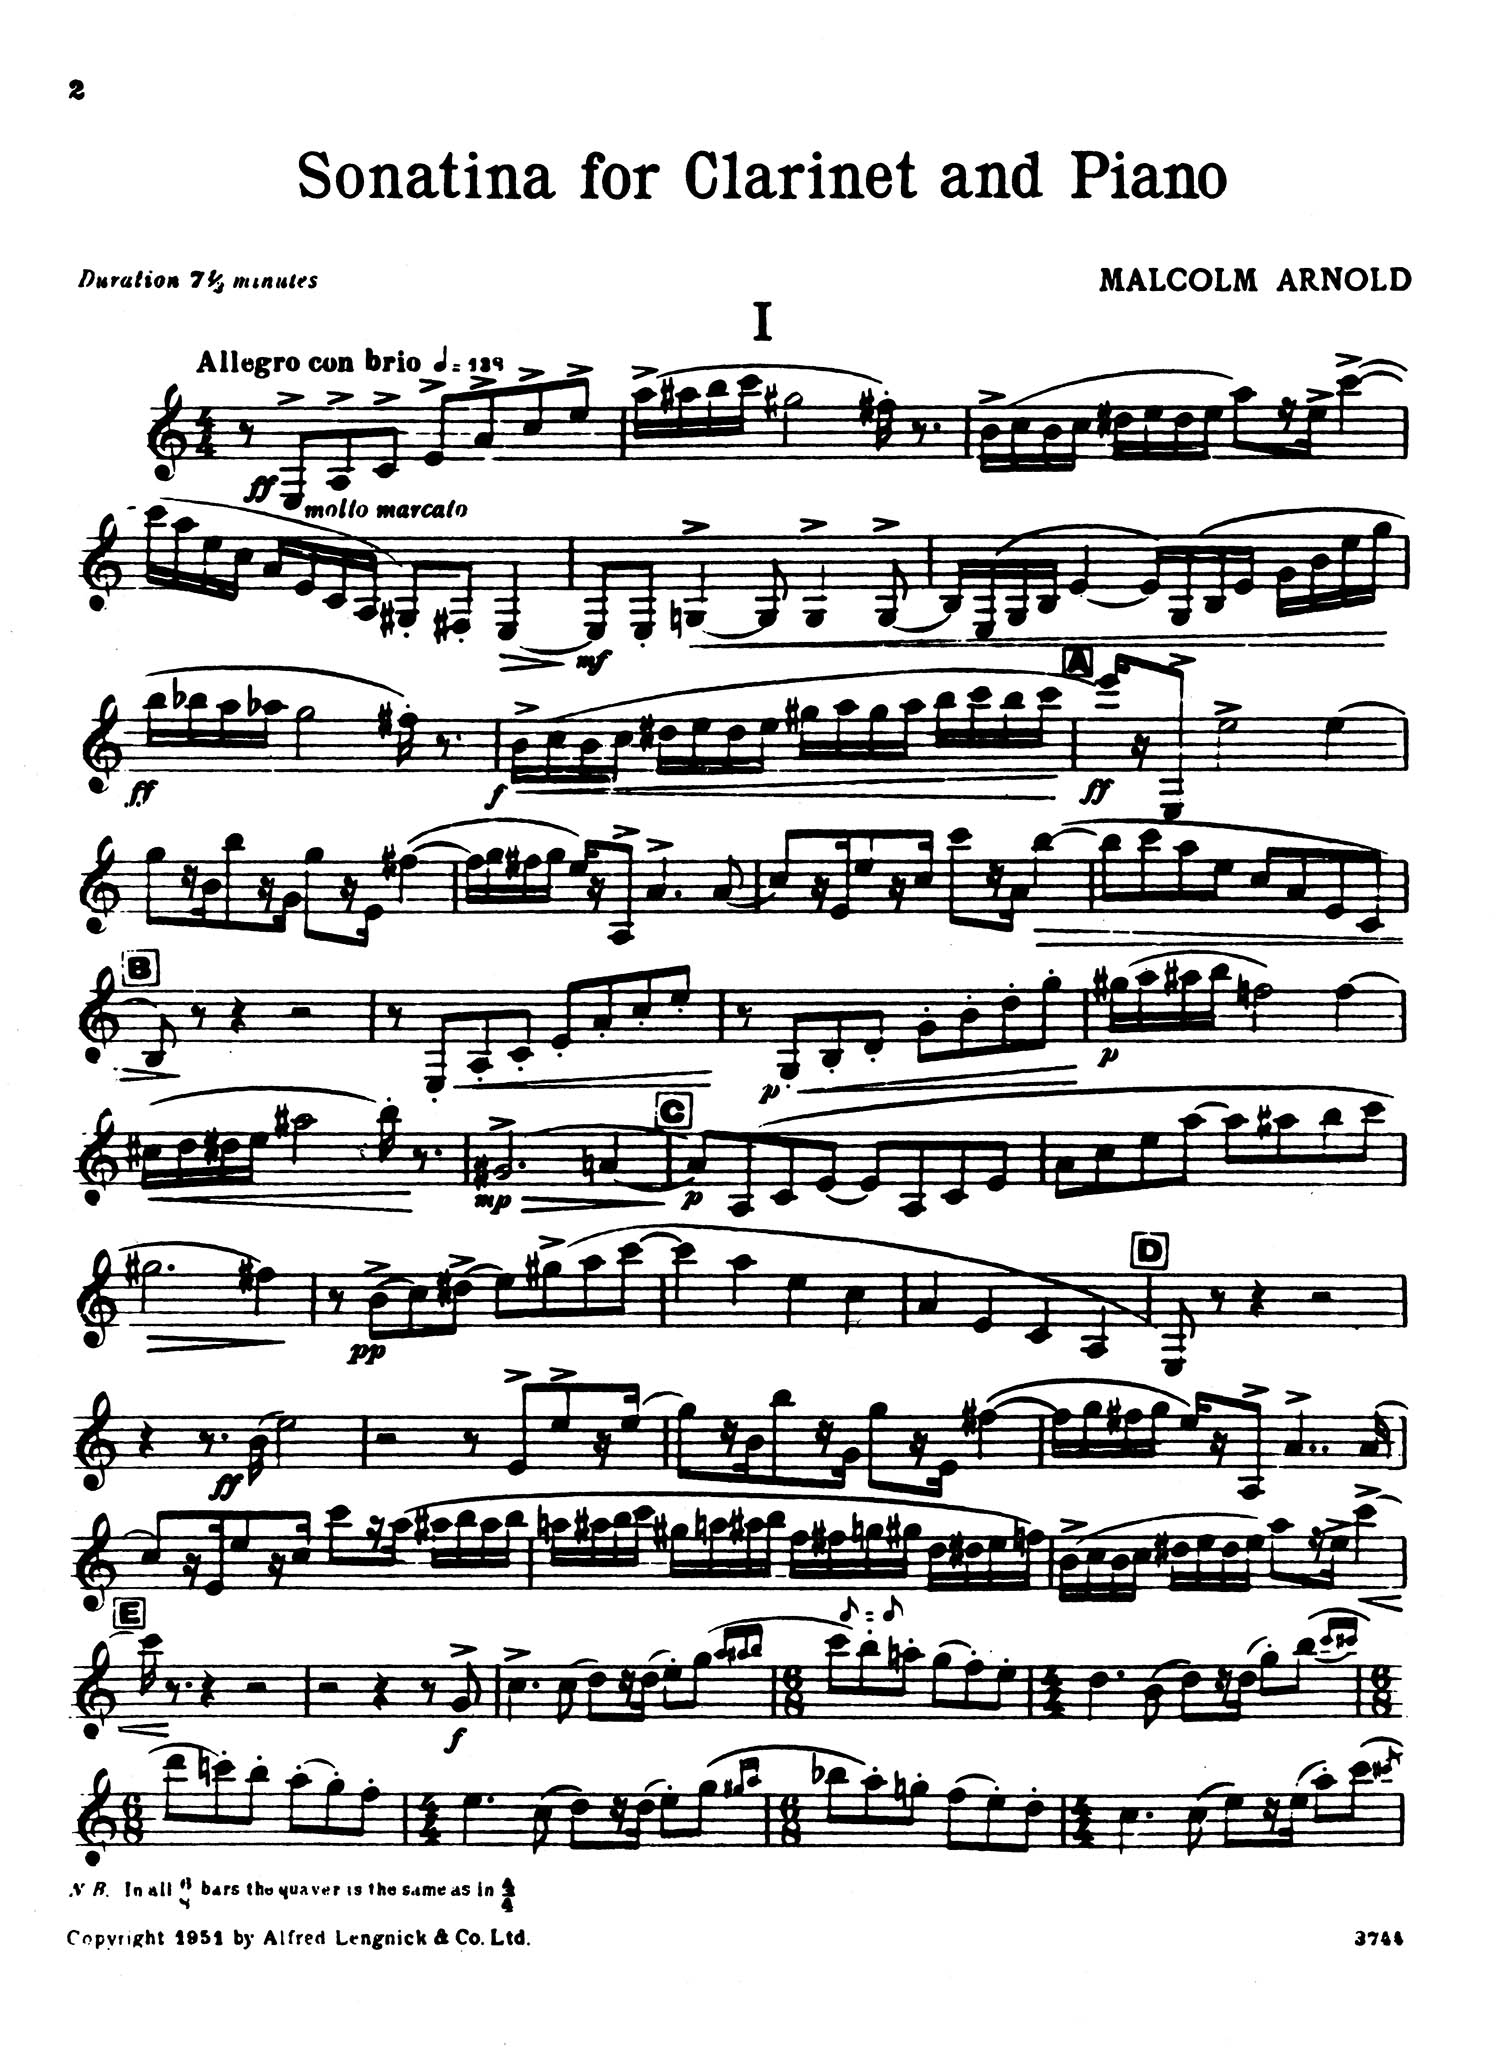 Sonatina Clarinet part